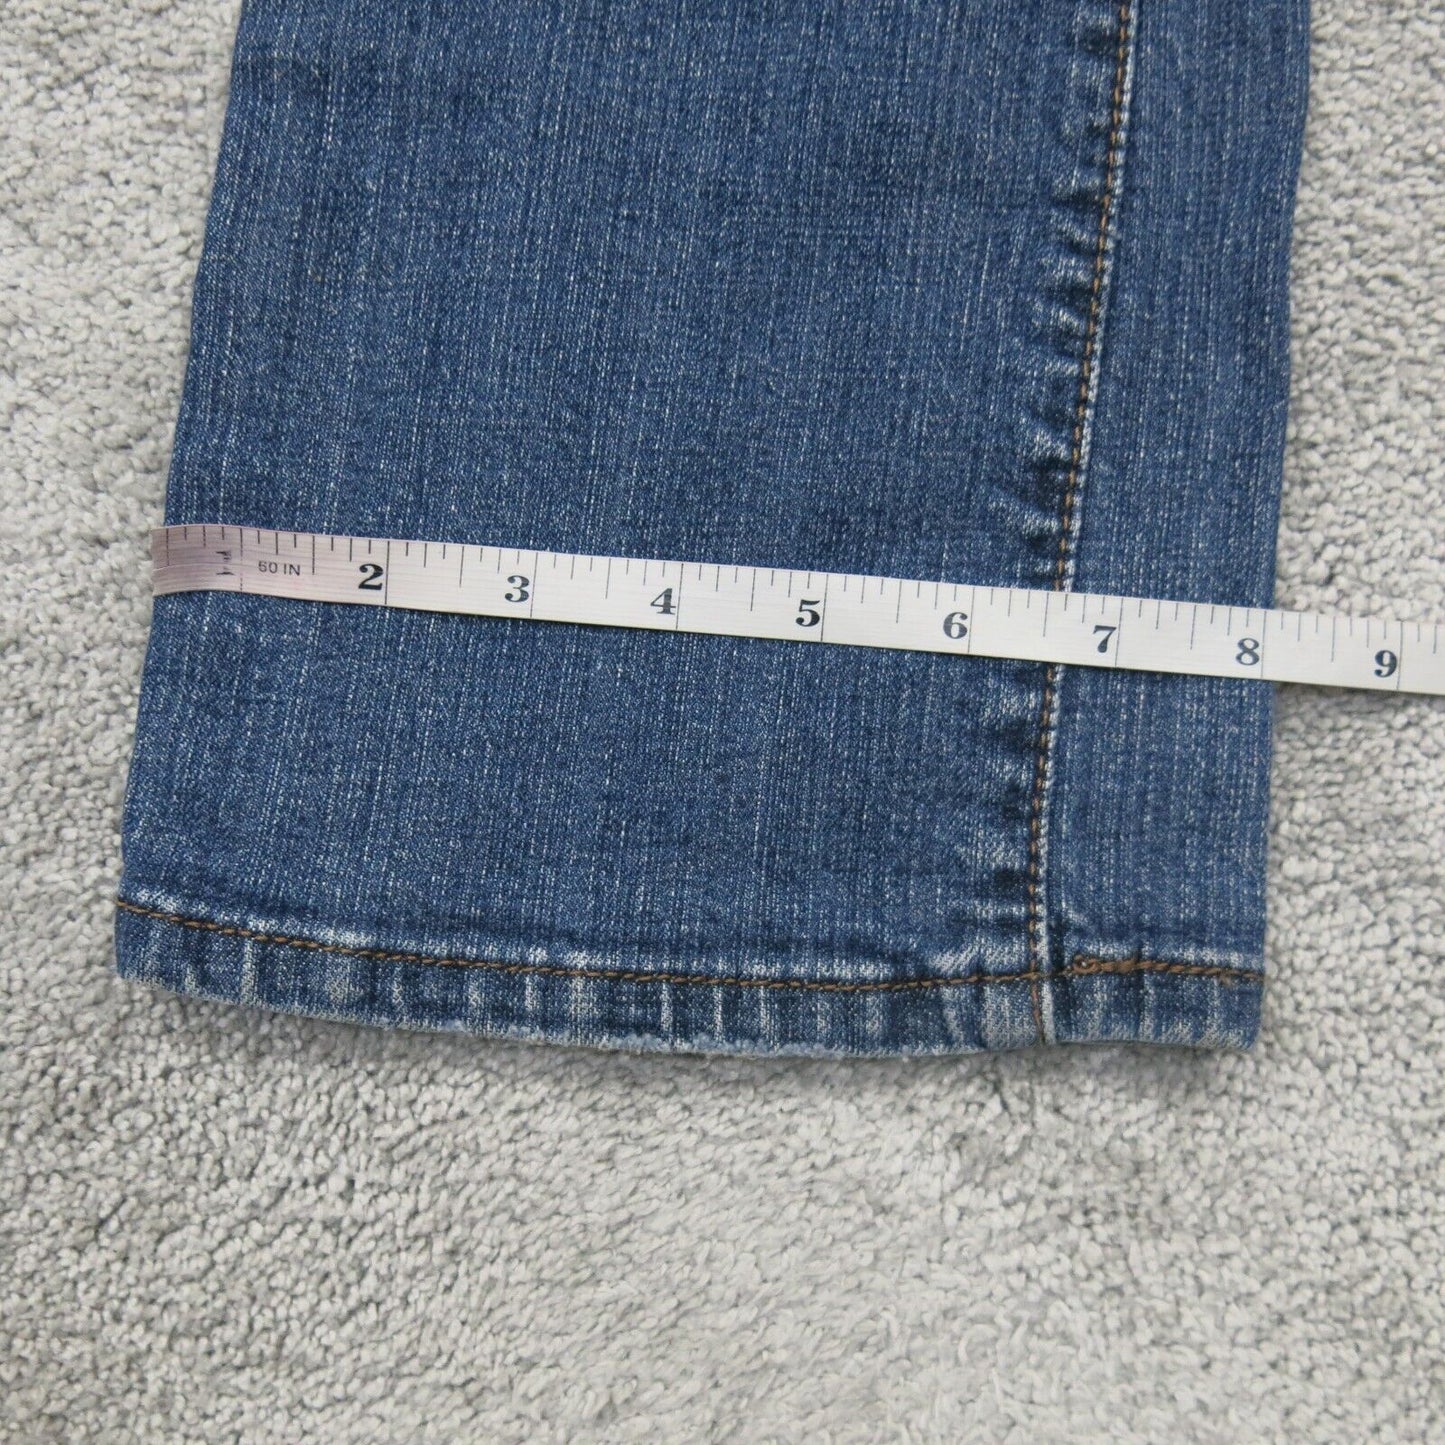 Levis 515 Womens Bootcut Jeans Denim Stretch Mid Rise Cotton Blue Size W28 X L30